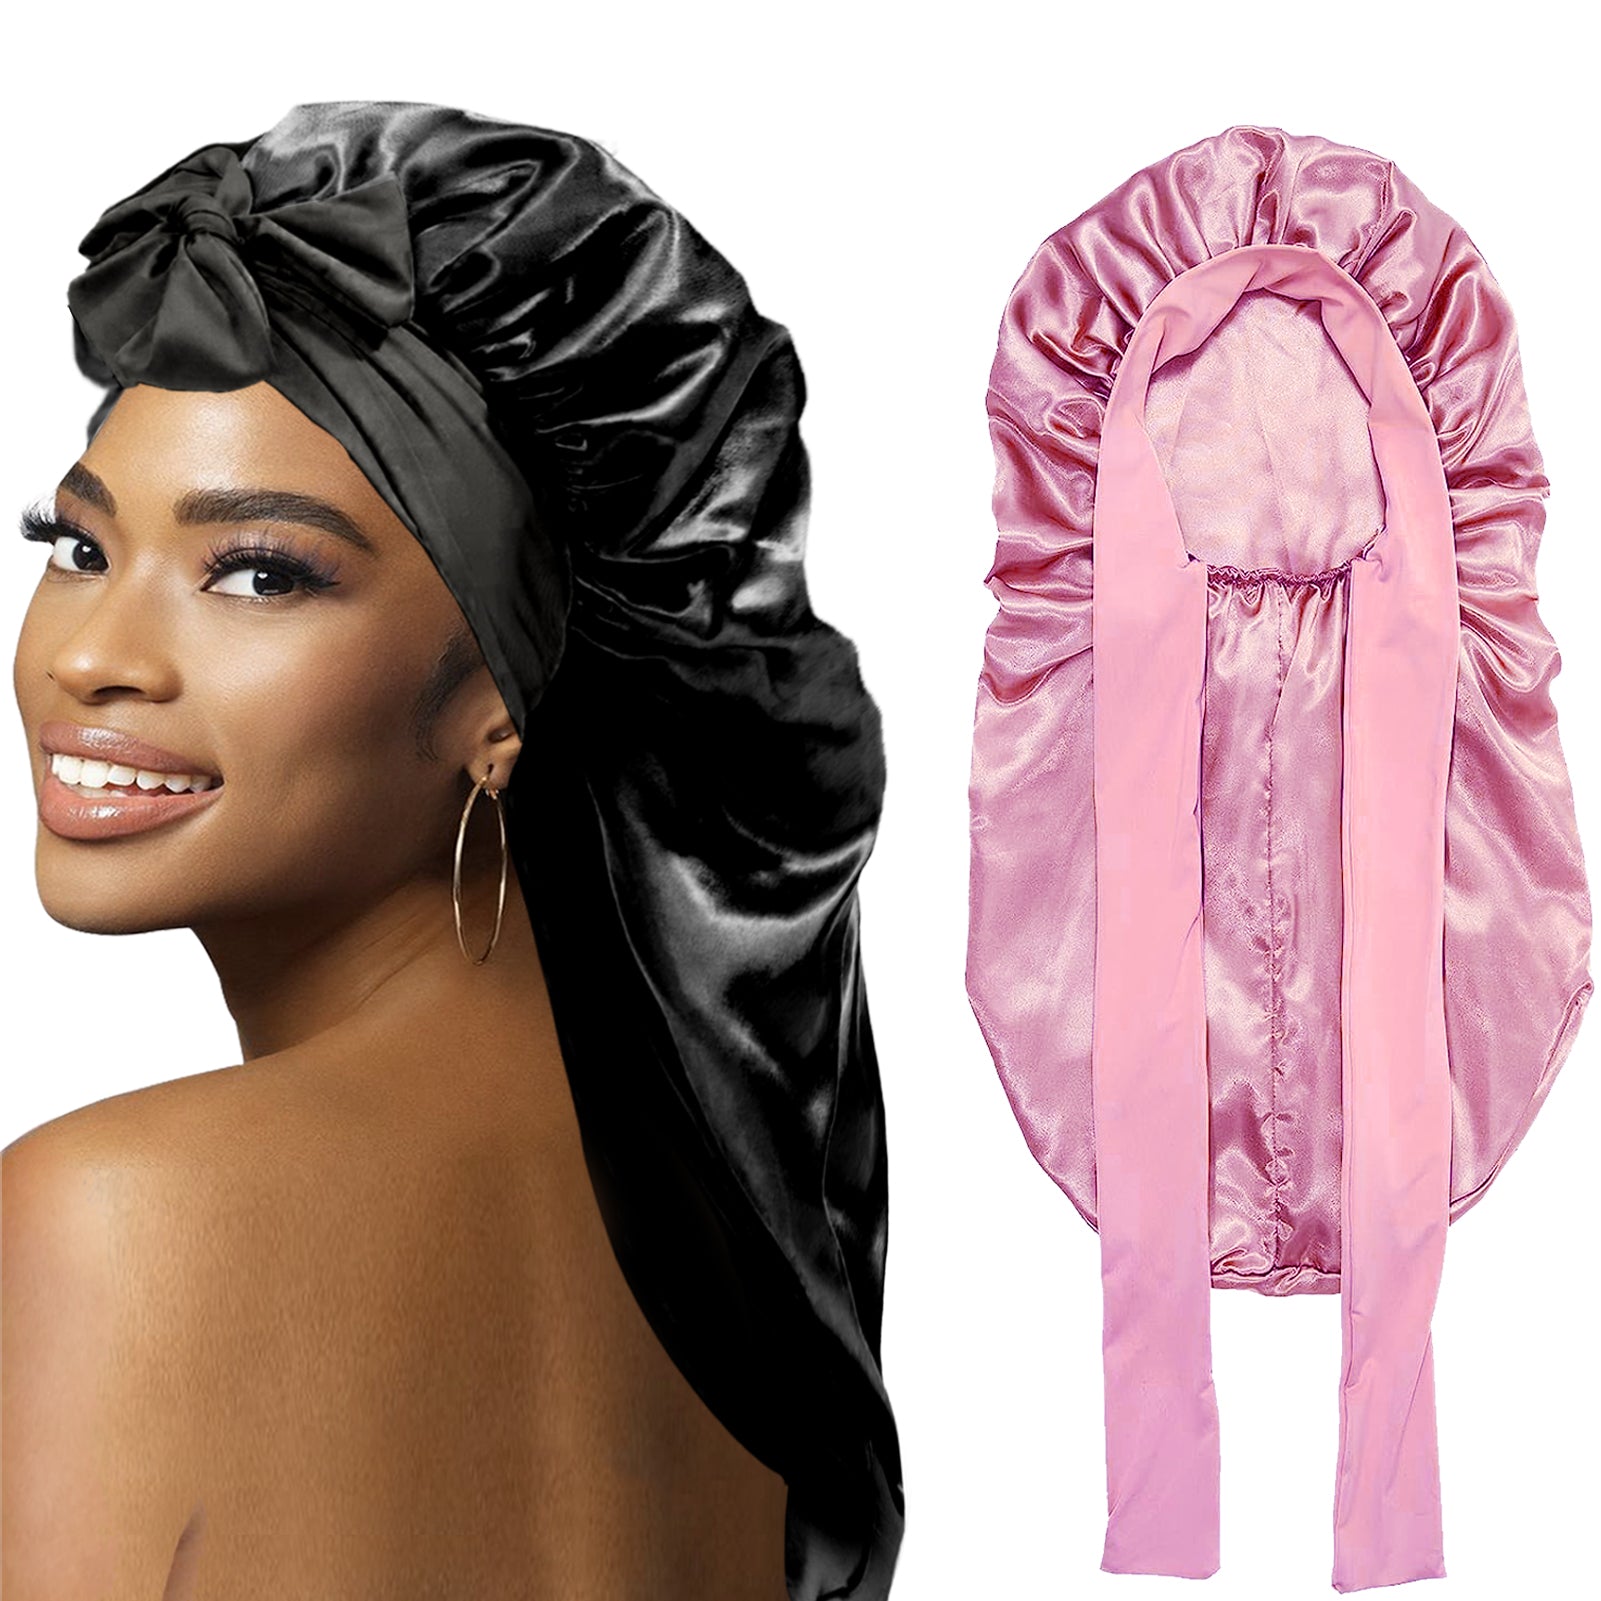 Bonnets for Black Women Braid Bonnet